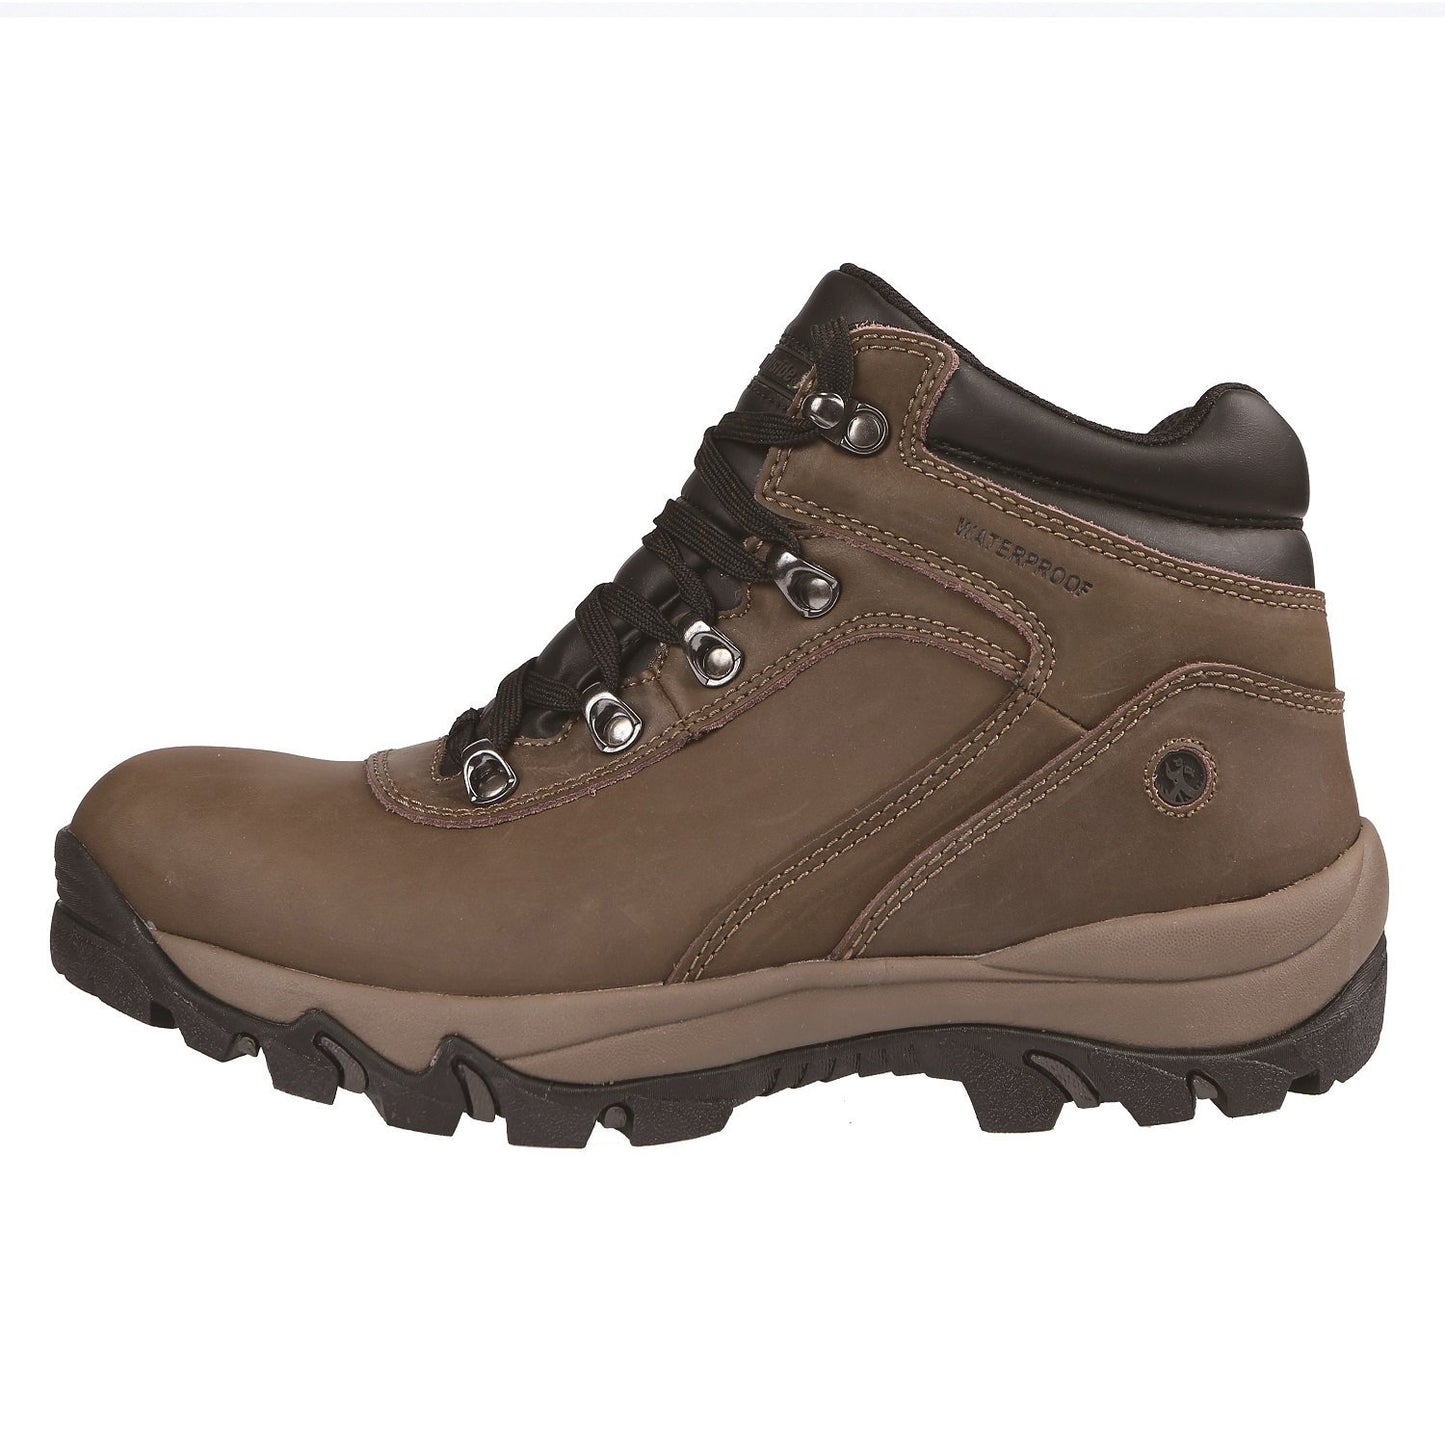 Northside Mens Apex Waterproof Hiking Leather Boot - Brown